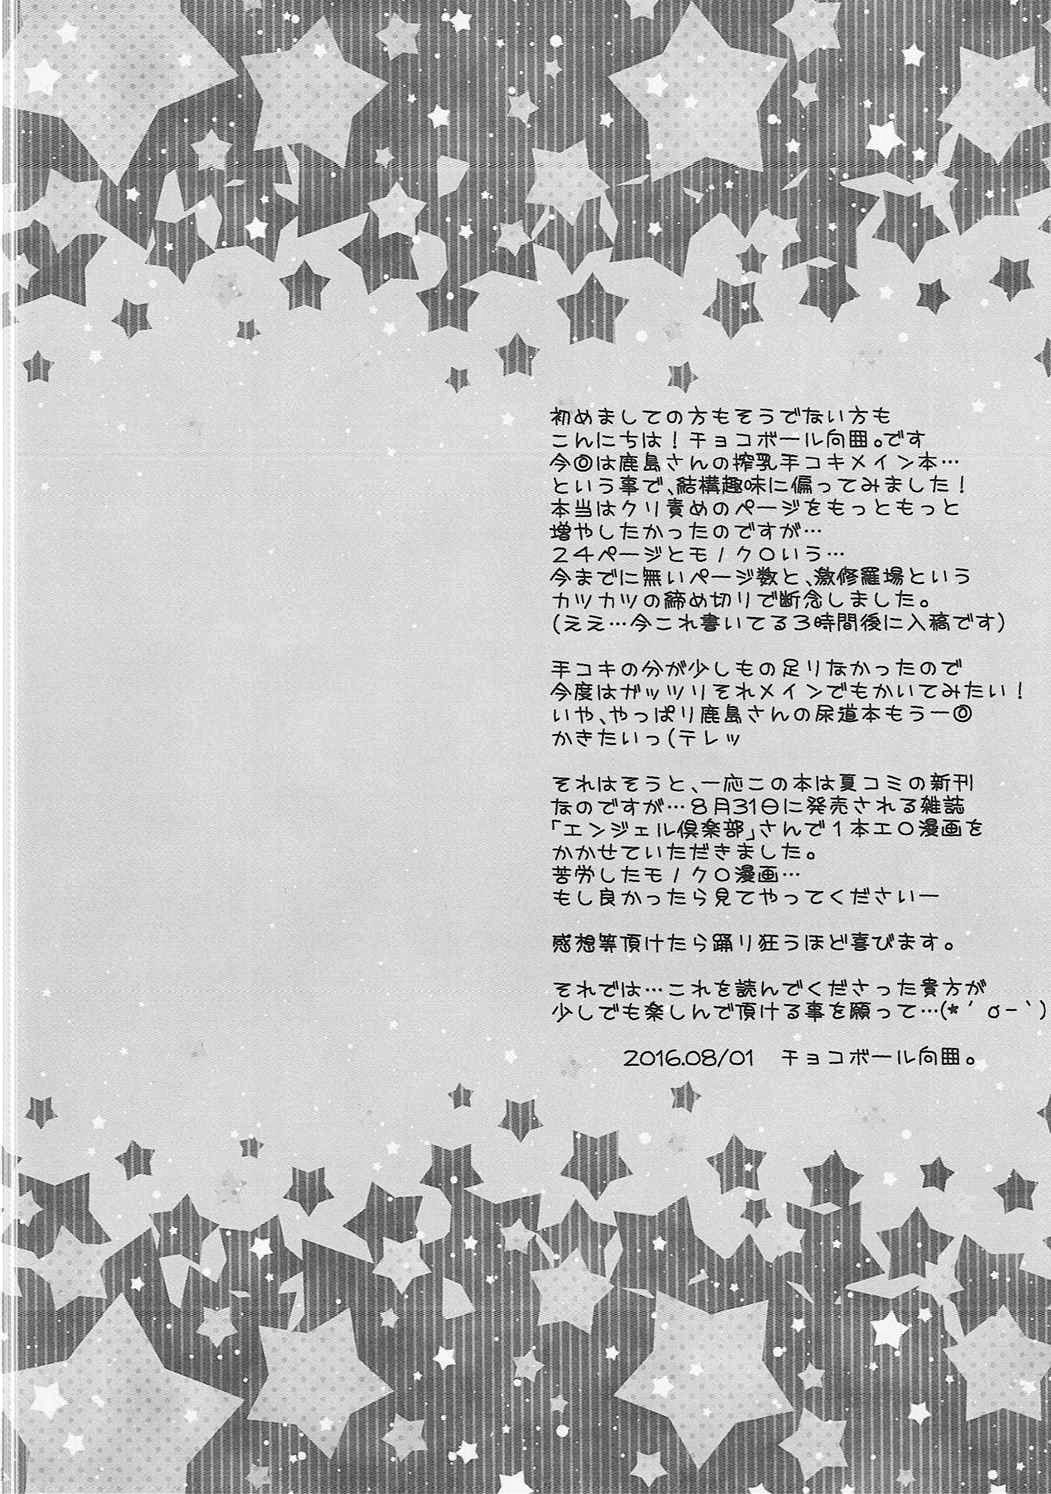 (C90) [Namacyoko (Chokoboll Mukakoi.)] Tekoki Sakunyuu Kashima-san (Kantai Collection -KanColle-) (C90) [生チョコ (チョコボール向囲。)] 手コキ搾乳鹿島さん (艦隊これくしょん -艦これ-)